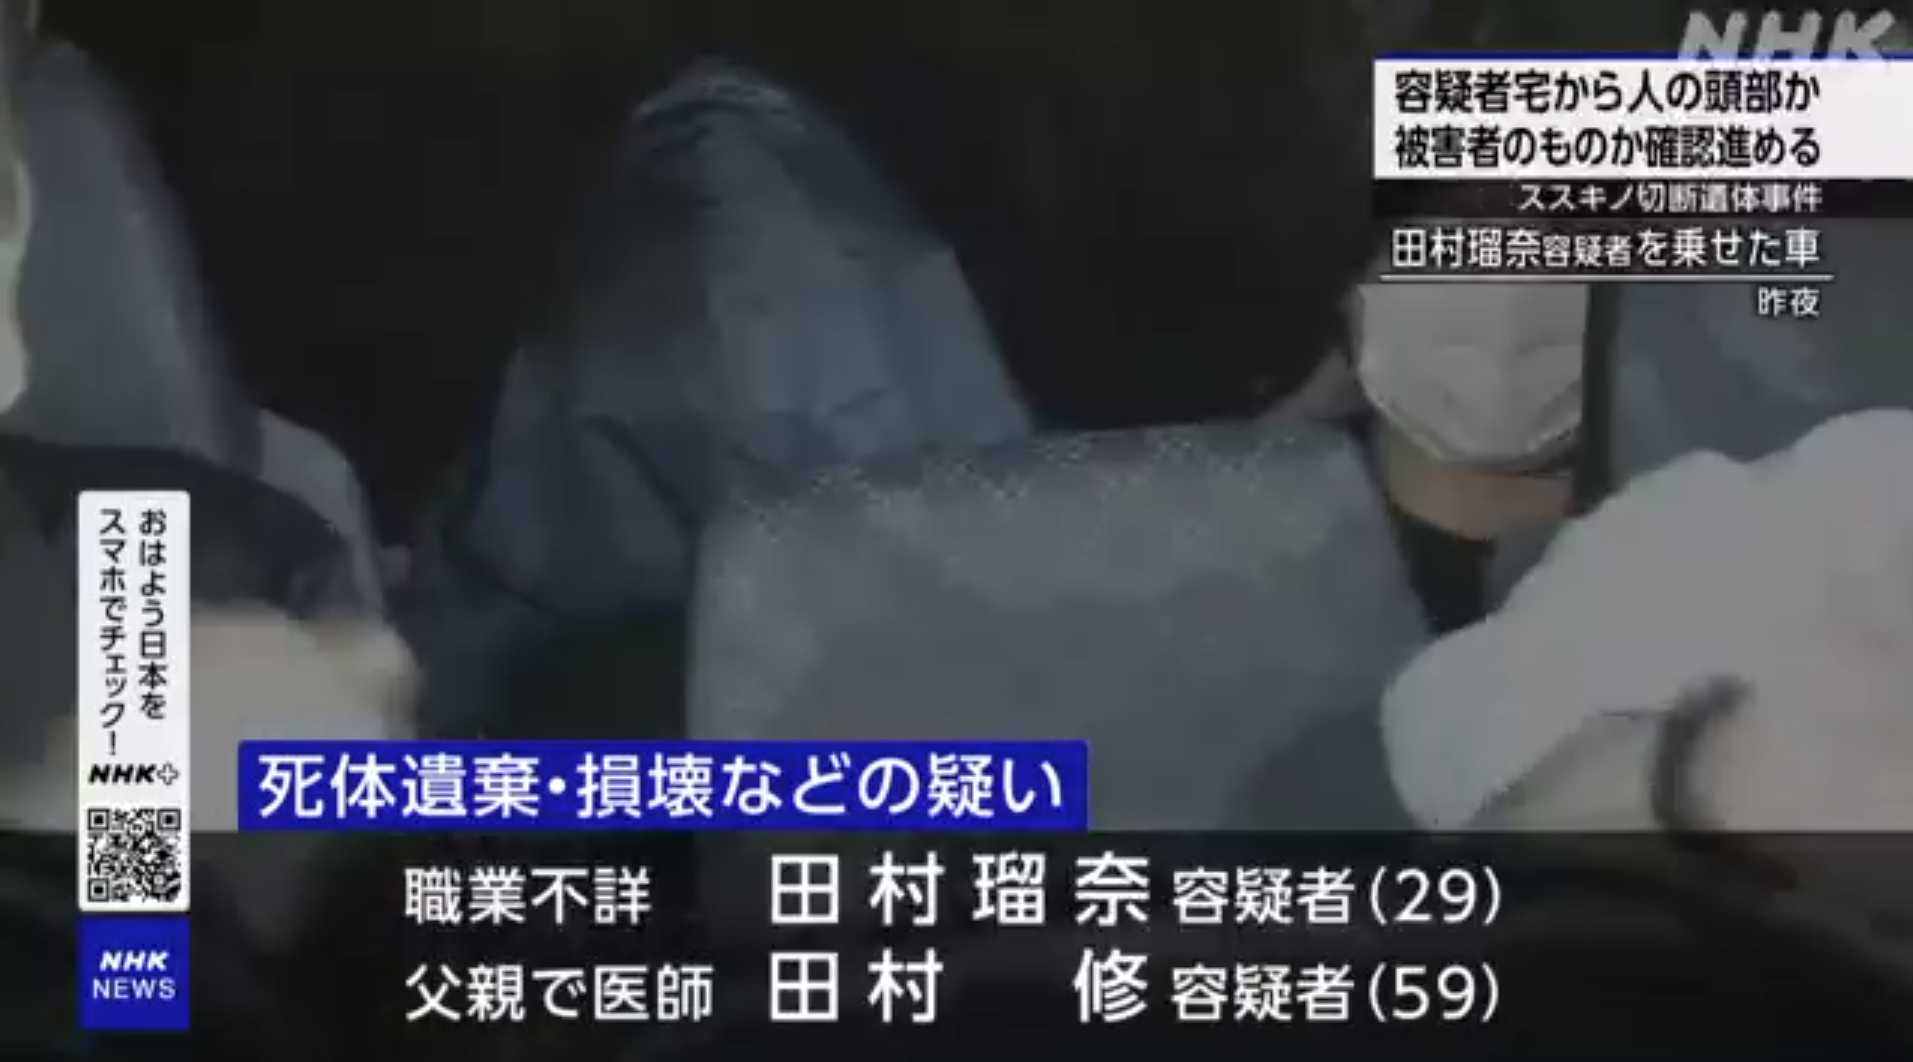 일본 홋카이도 삿포로의 한 호텔에서 머리 없는 남성의 시신이 발견된 가운데 용의자가 호송되고 있다. NHK 보도화면 캡처